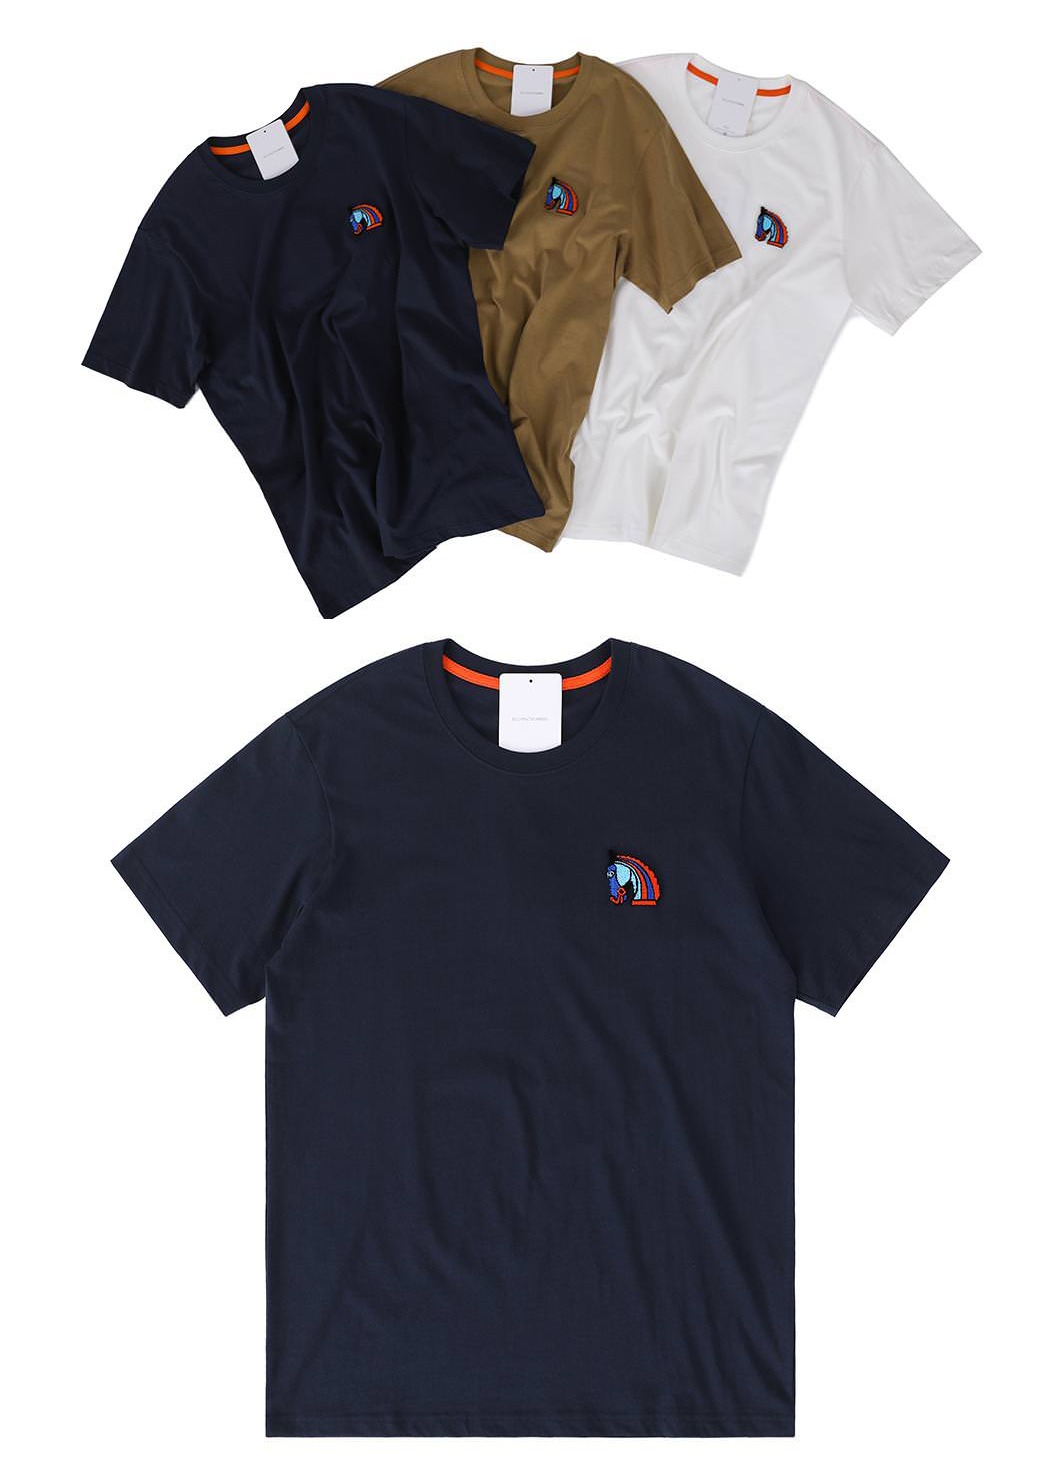 HORSE Emblem T-Shirt-3color